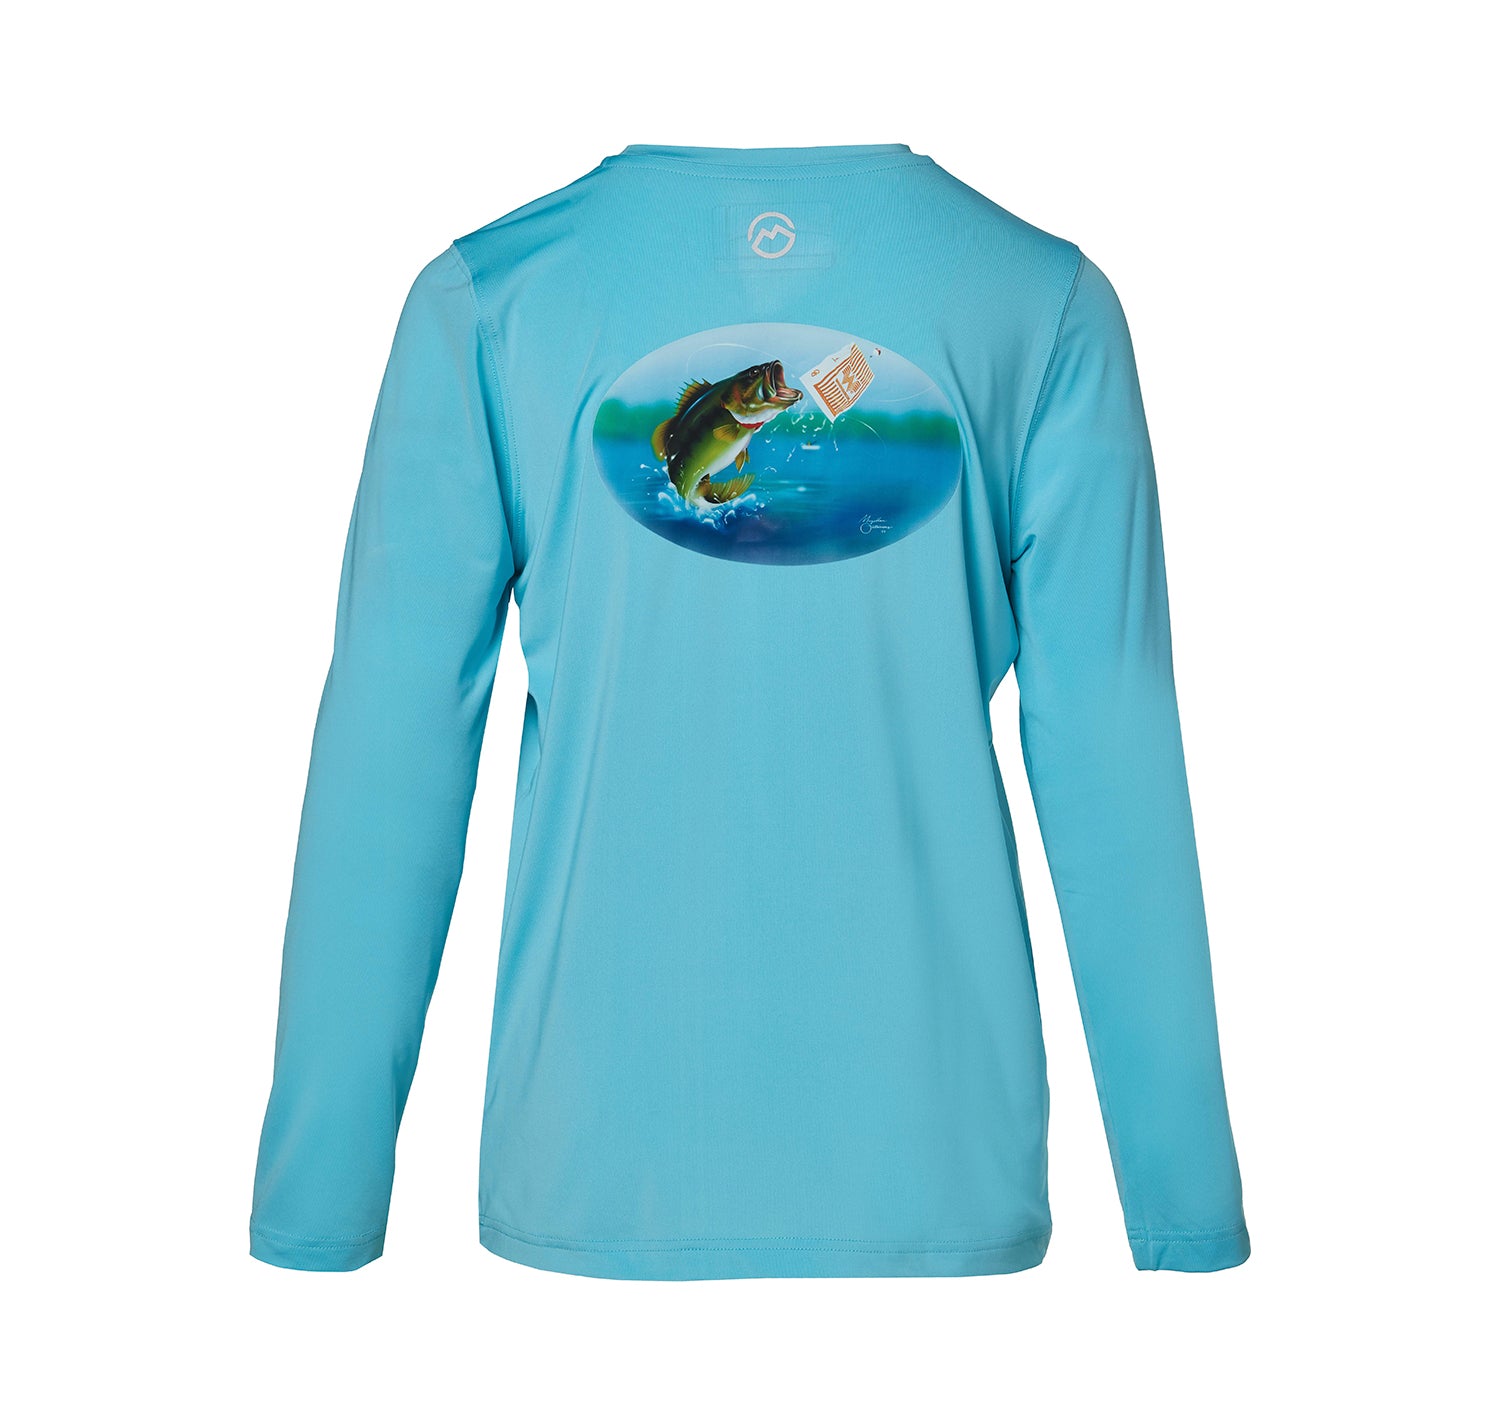 Magellan Women's Teal Long Sleeve Fishing Shirt